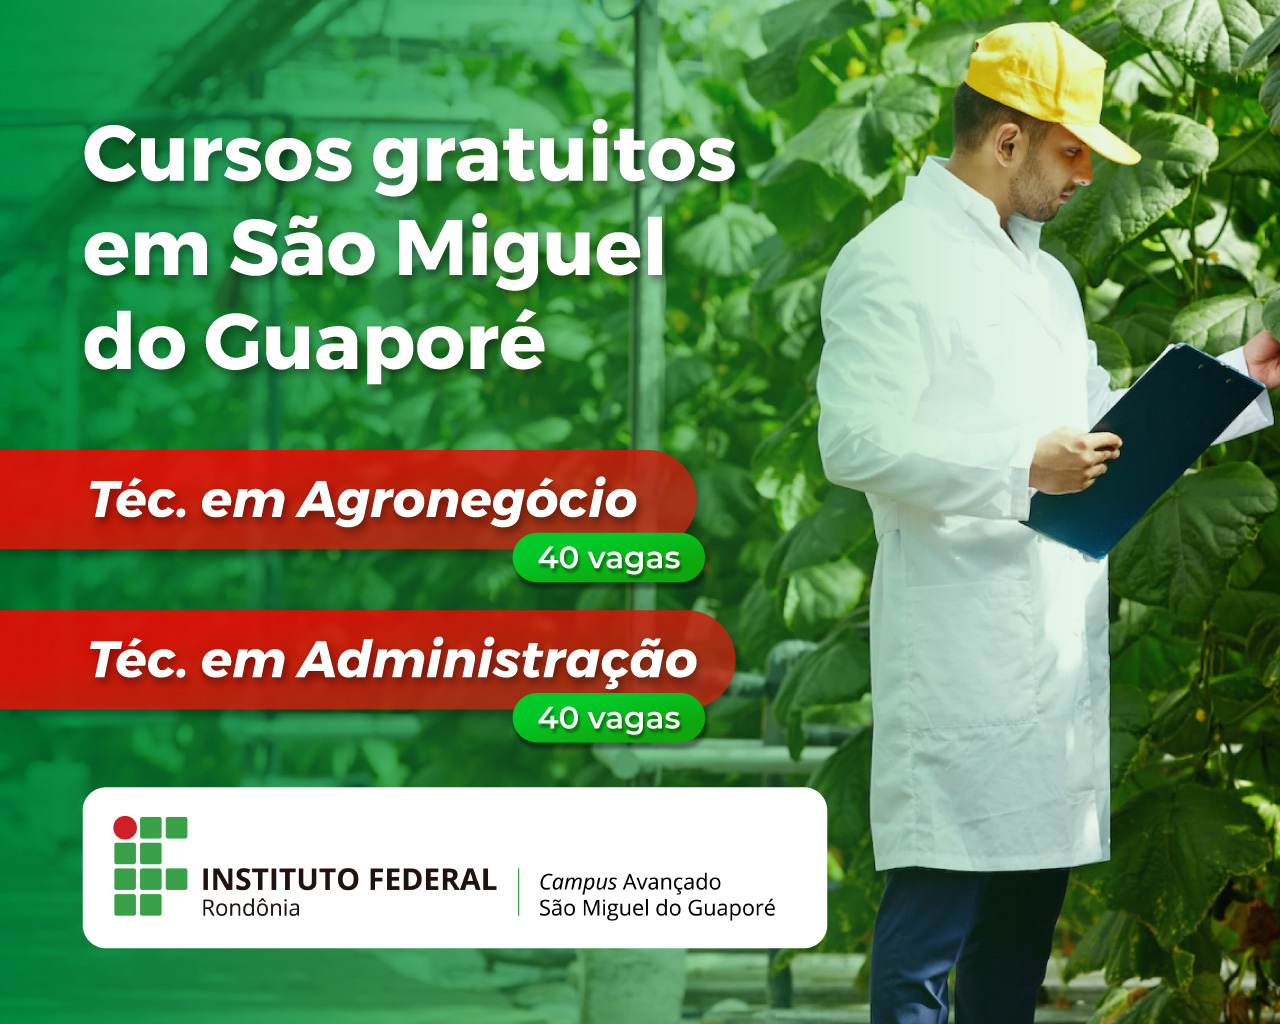 80 vagas para cursos técnicos subsequentes em Administração e Agronegócio no processo seletivo do IFRO Campus Avançado São Miguel do Guaporé